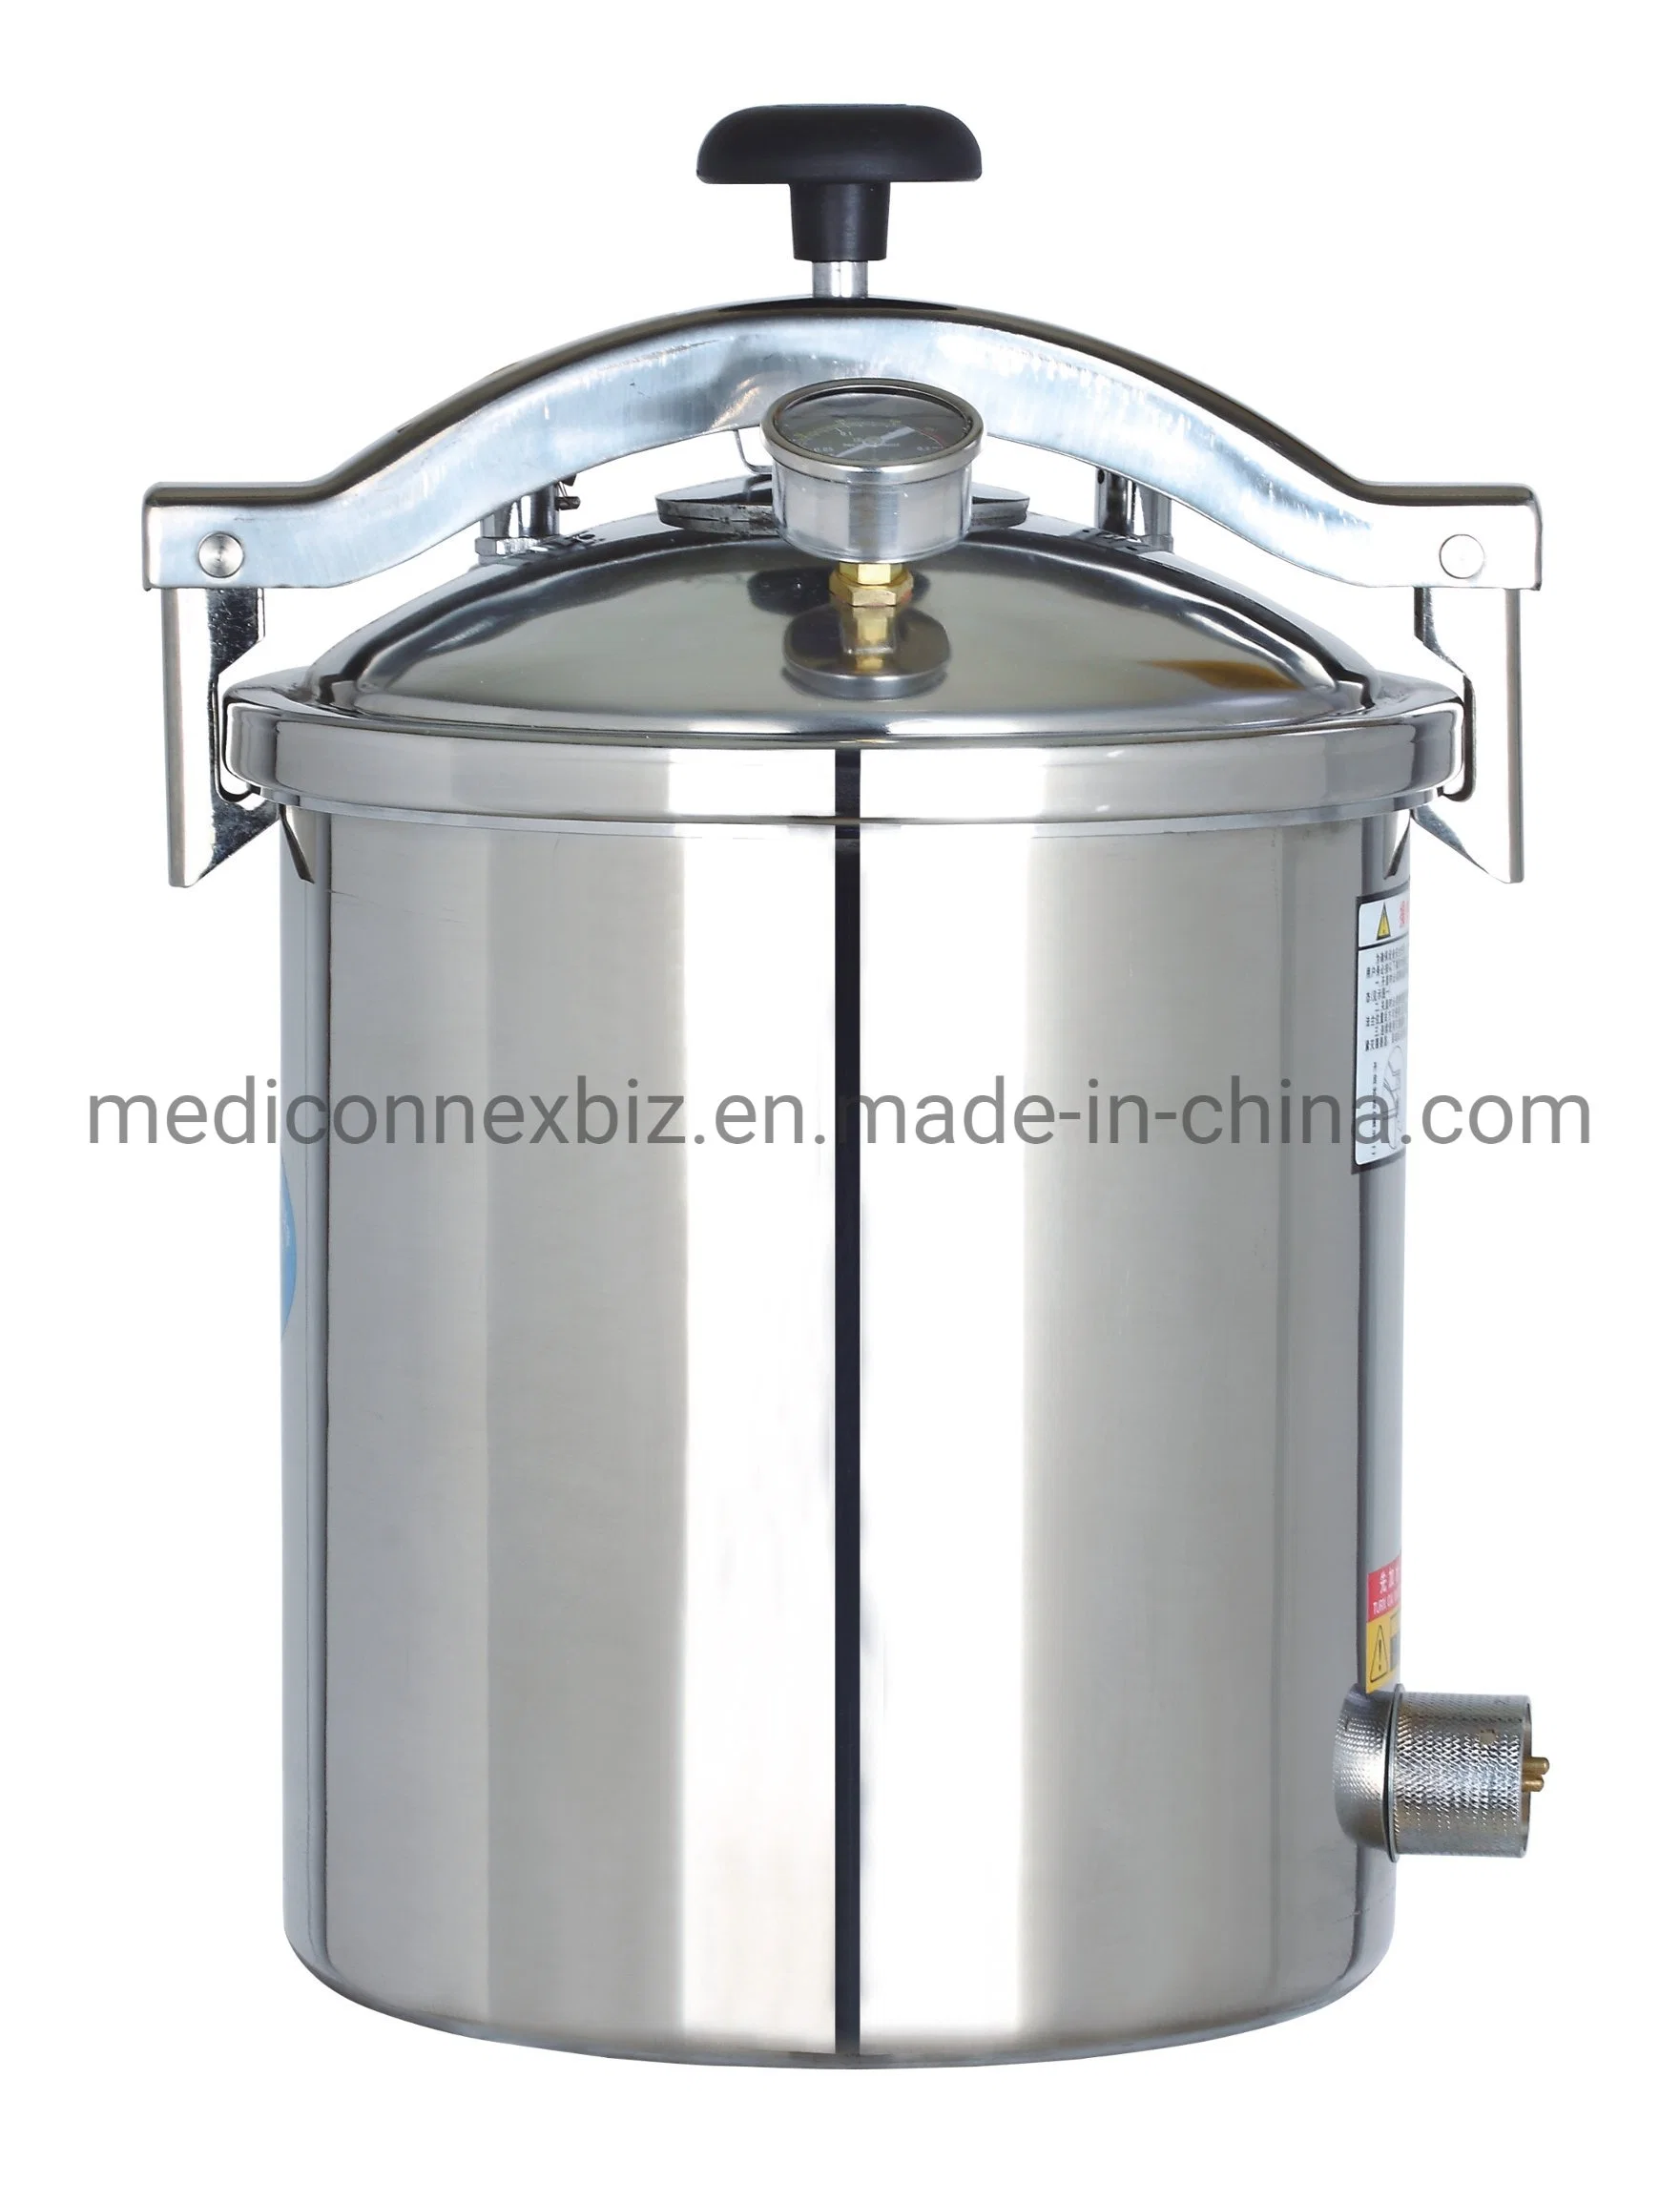 El esterilizador a vapor presión portátil /Autoclave 18L/esterilizador y equipos médicos